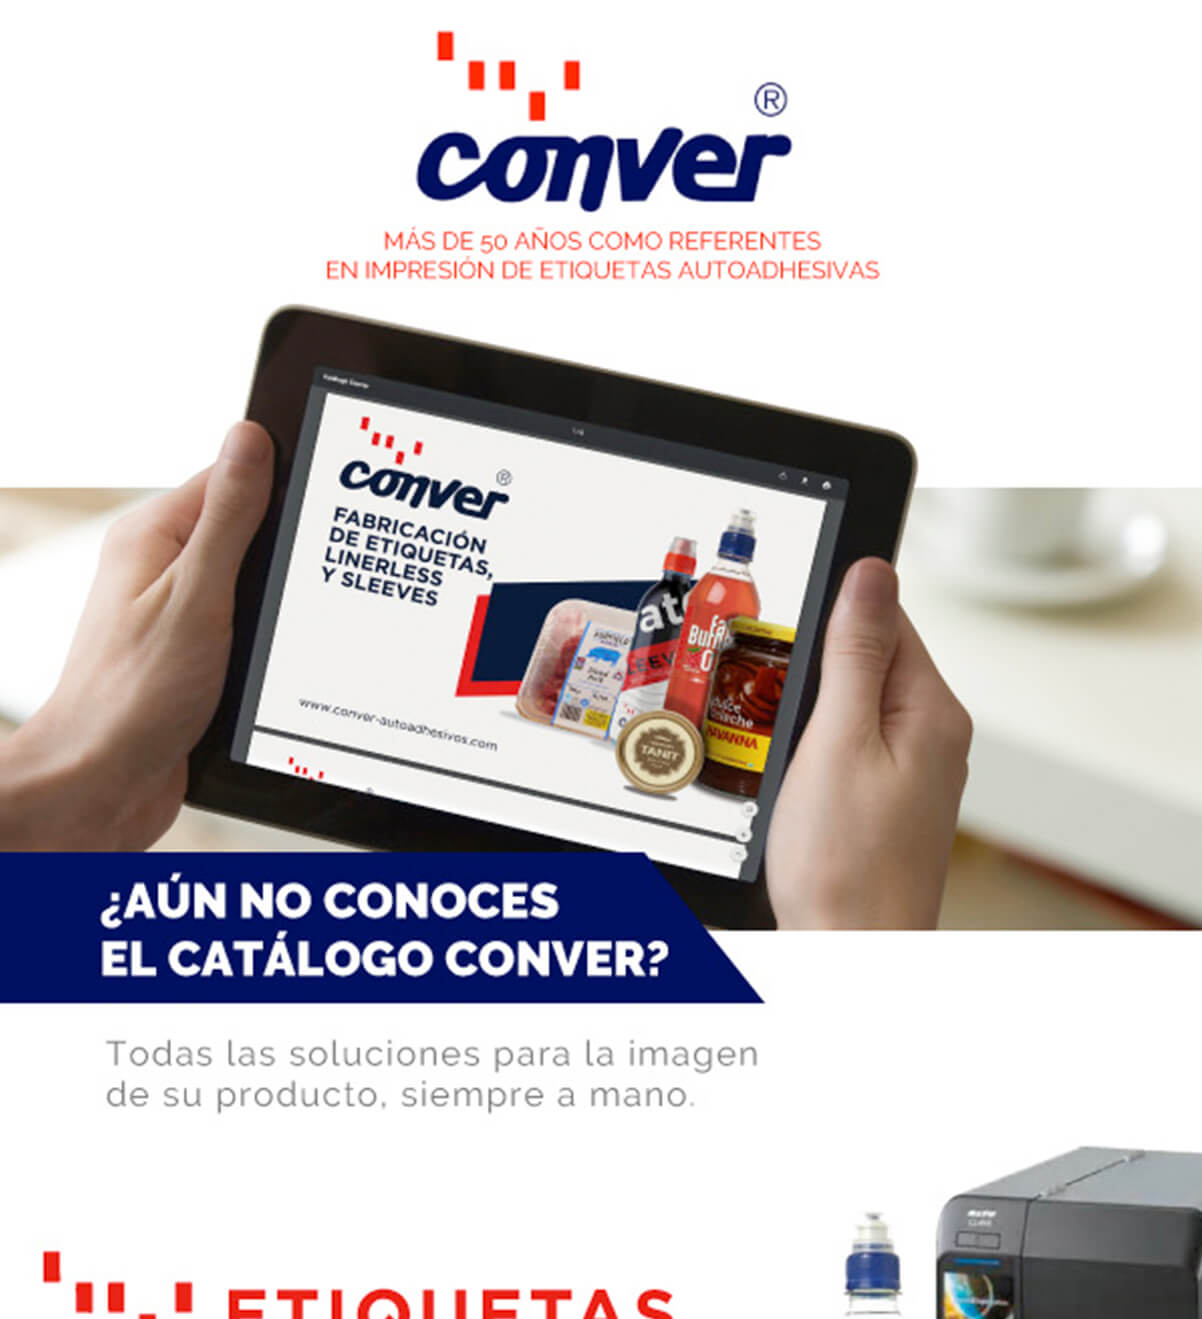 CONVER Autoadhesivos - Newsletter - Fabrica de etiquetas Adhesivas